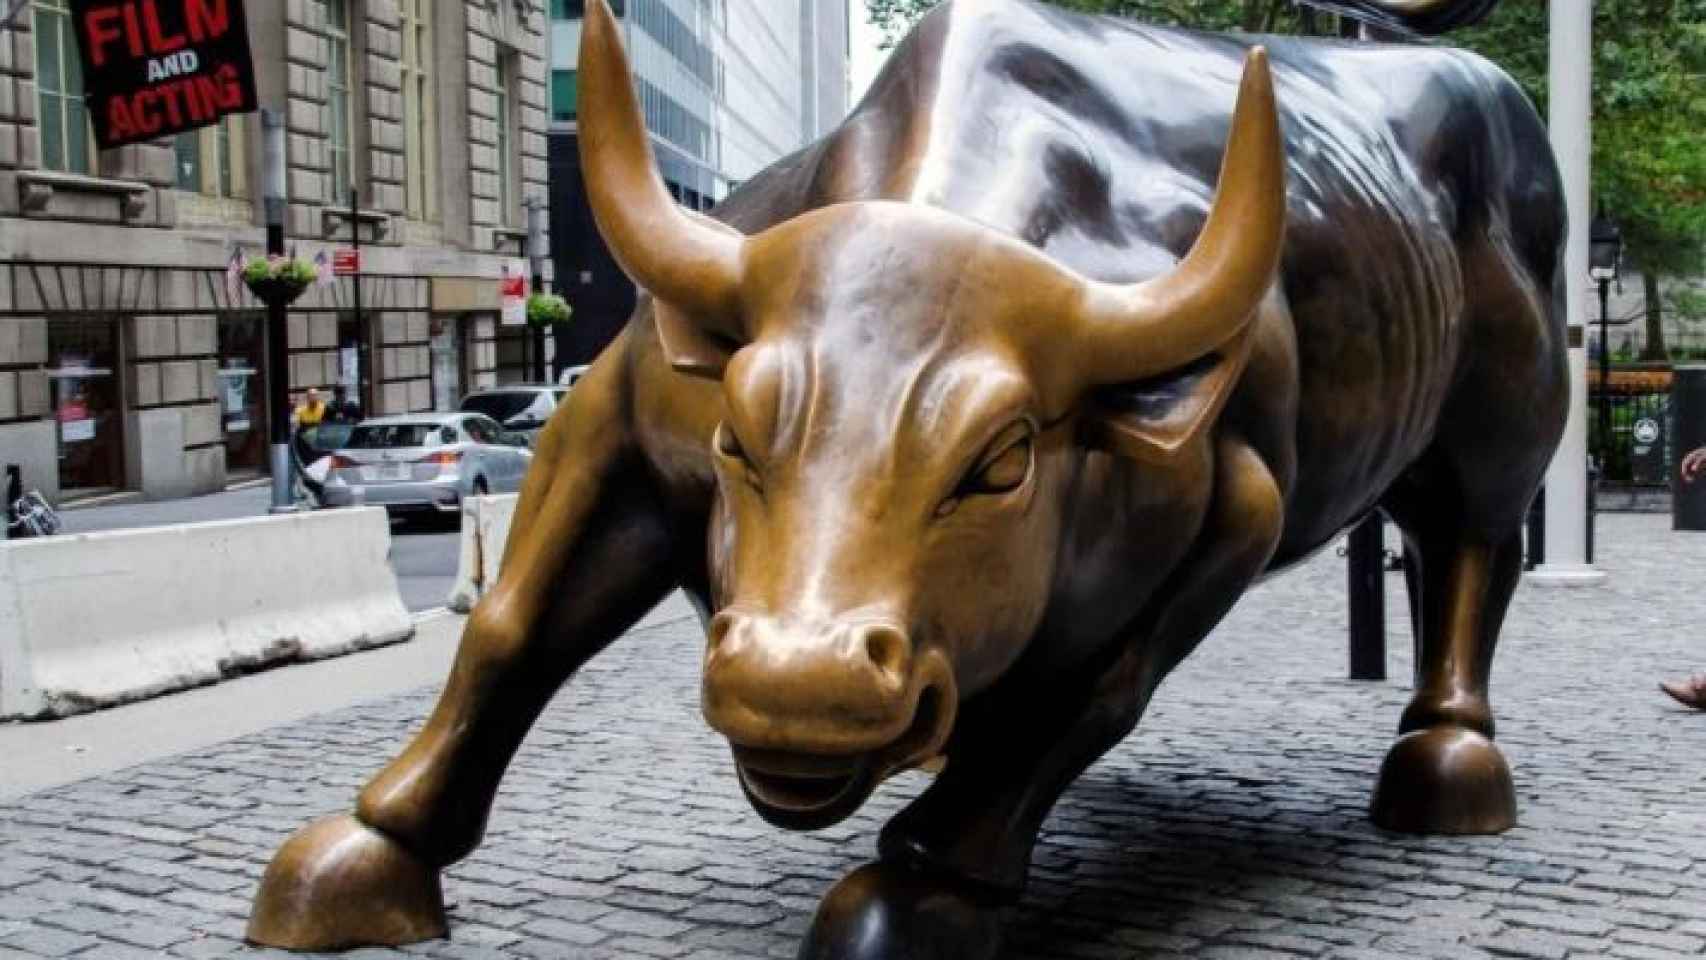 Escultura del toro de Wall Street, símbolo del optimismo del mercado.